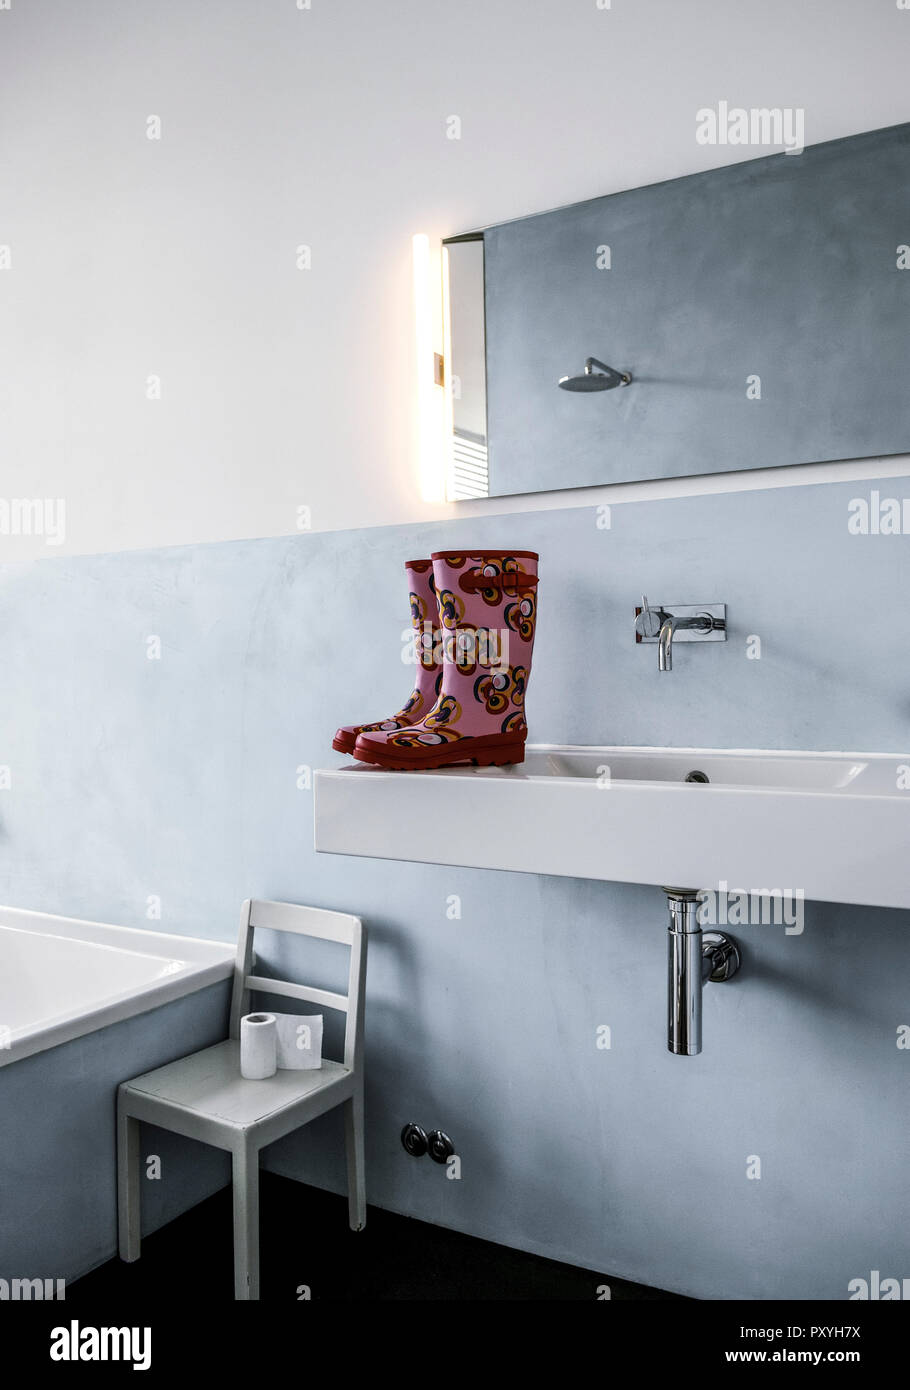 Badezimmer, Gummistiefel stehen auf Waschbecken Stock Photo